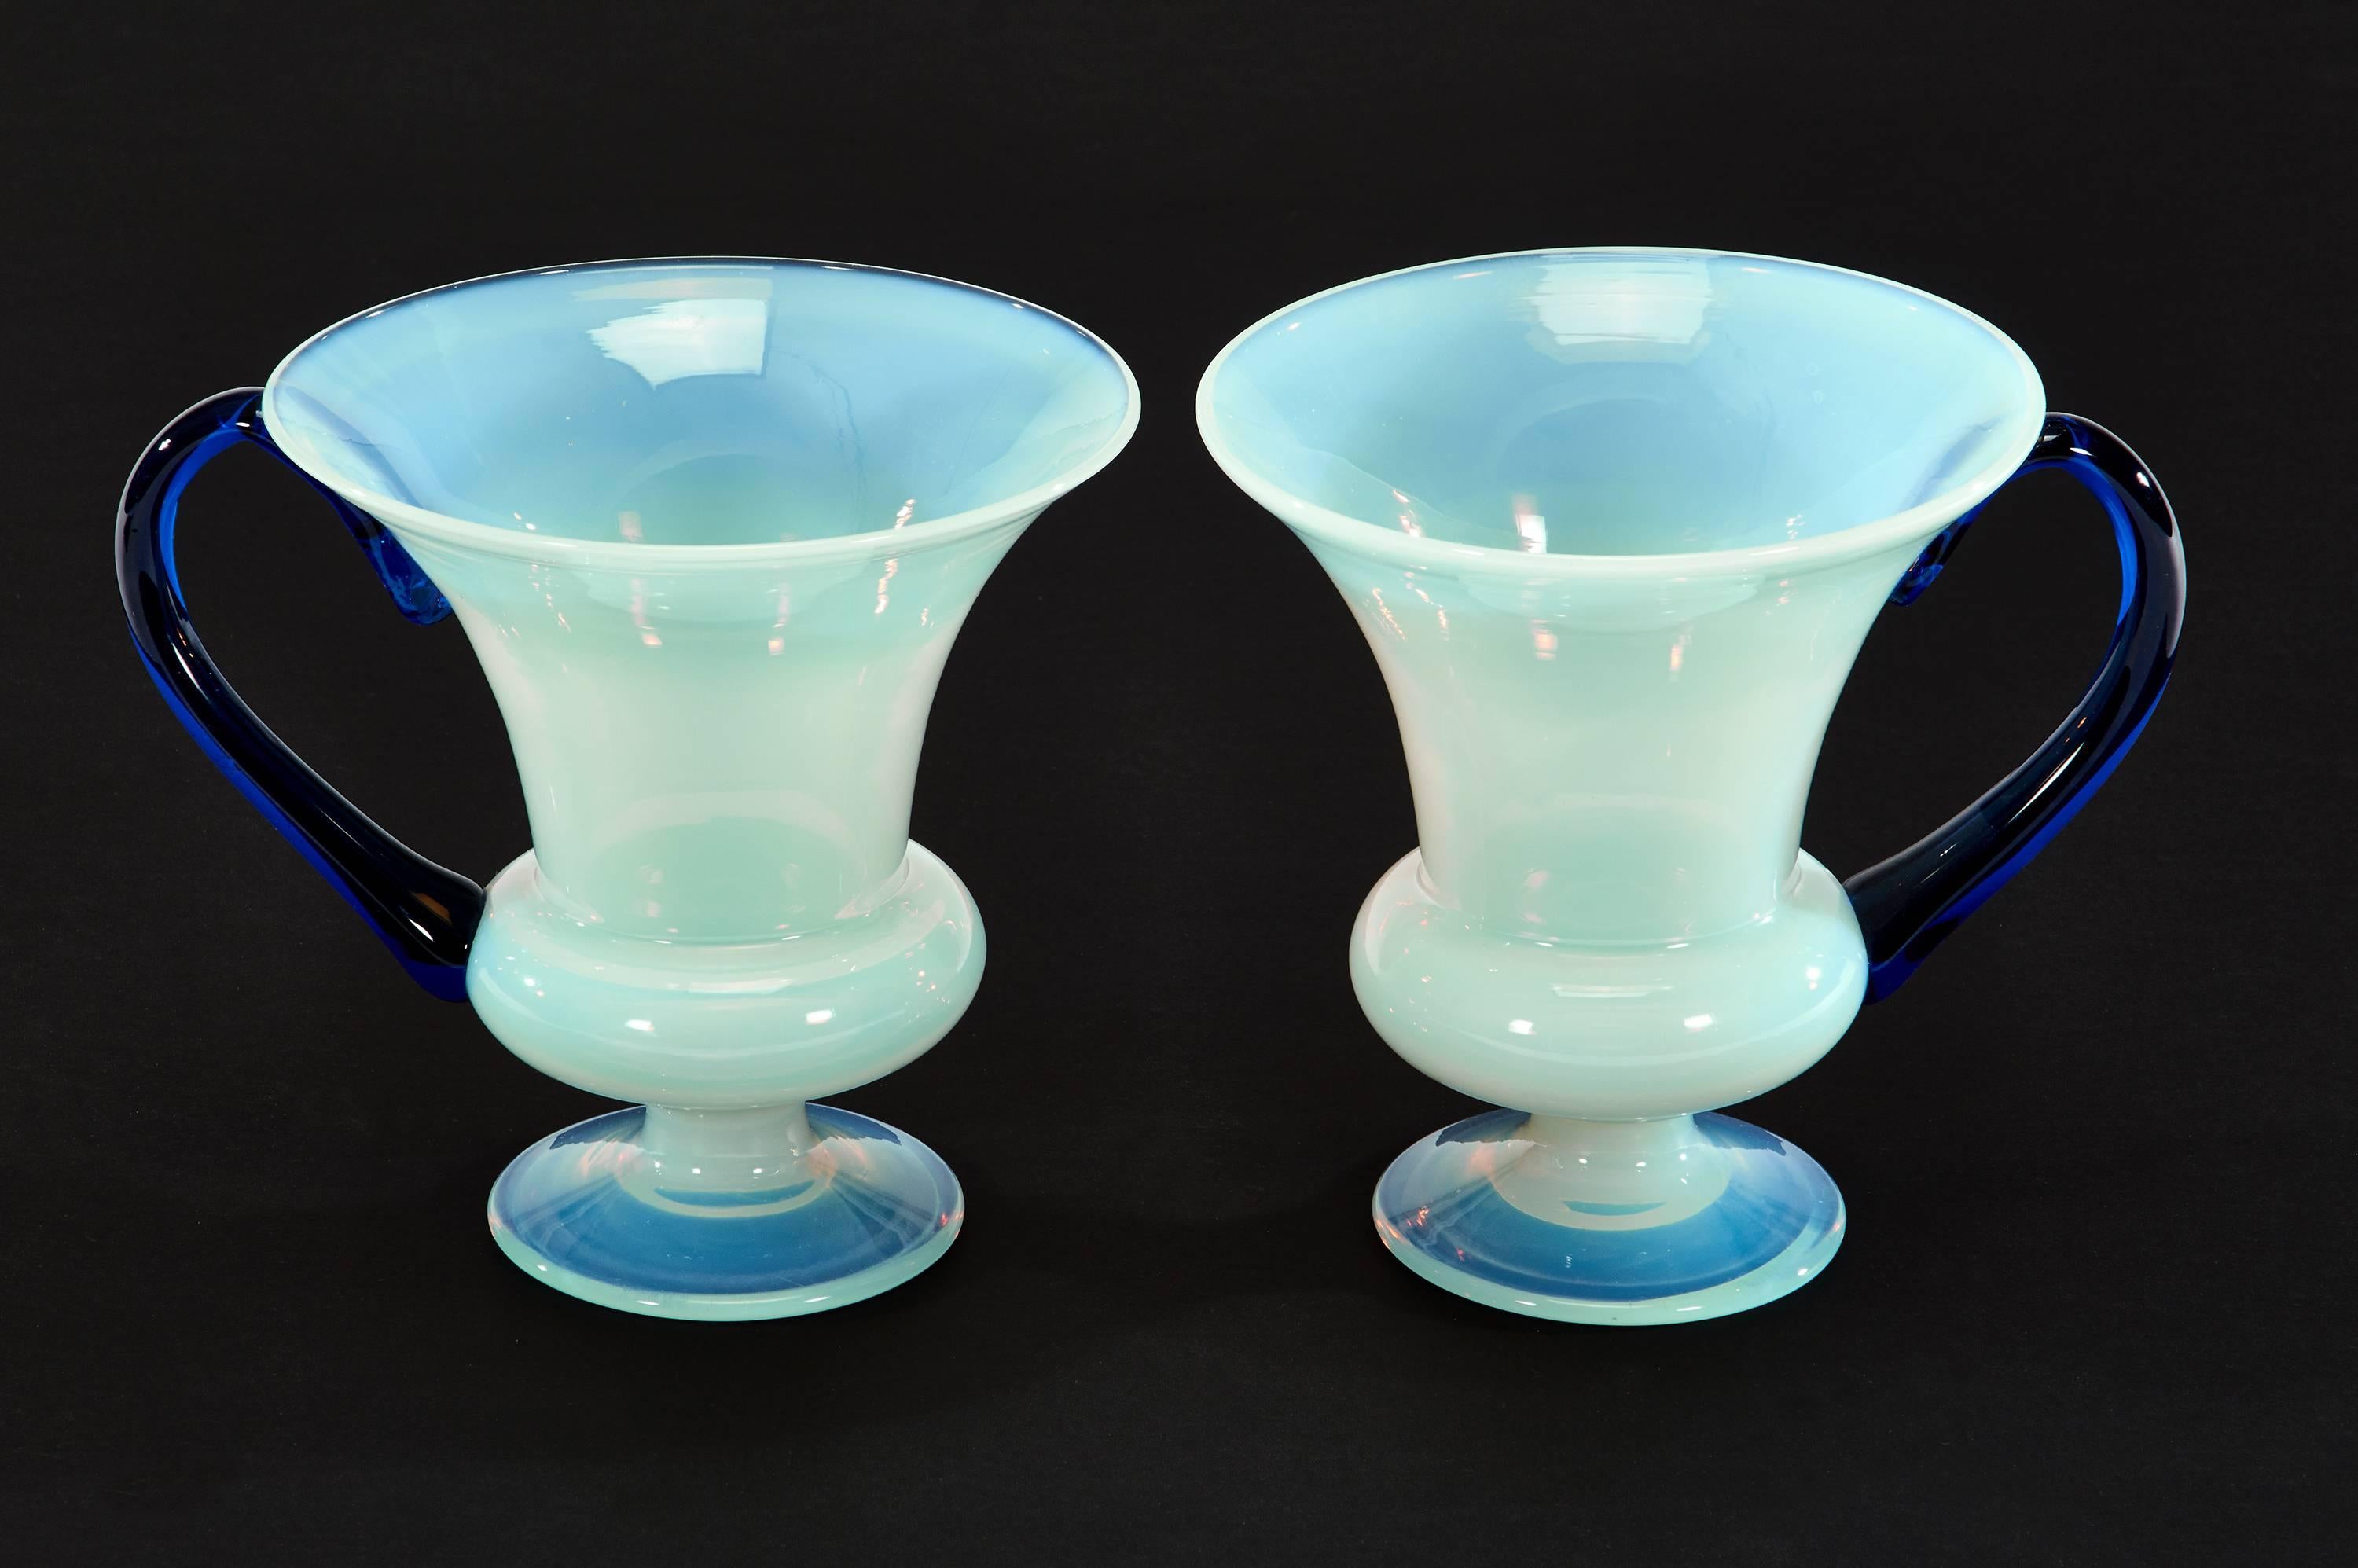 Il s'agit d'une paire inhabituelle de vases Fry soufflés à la main dans un verre opalescent qui a été décrit comme 